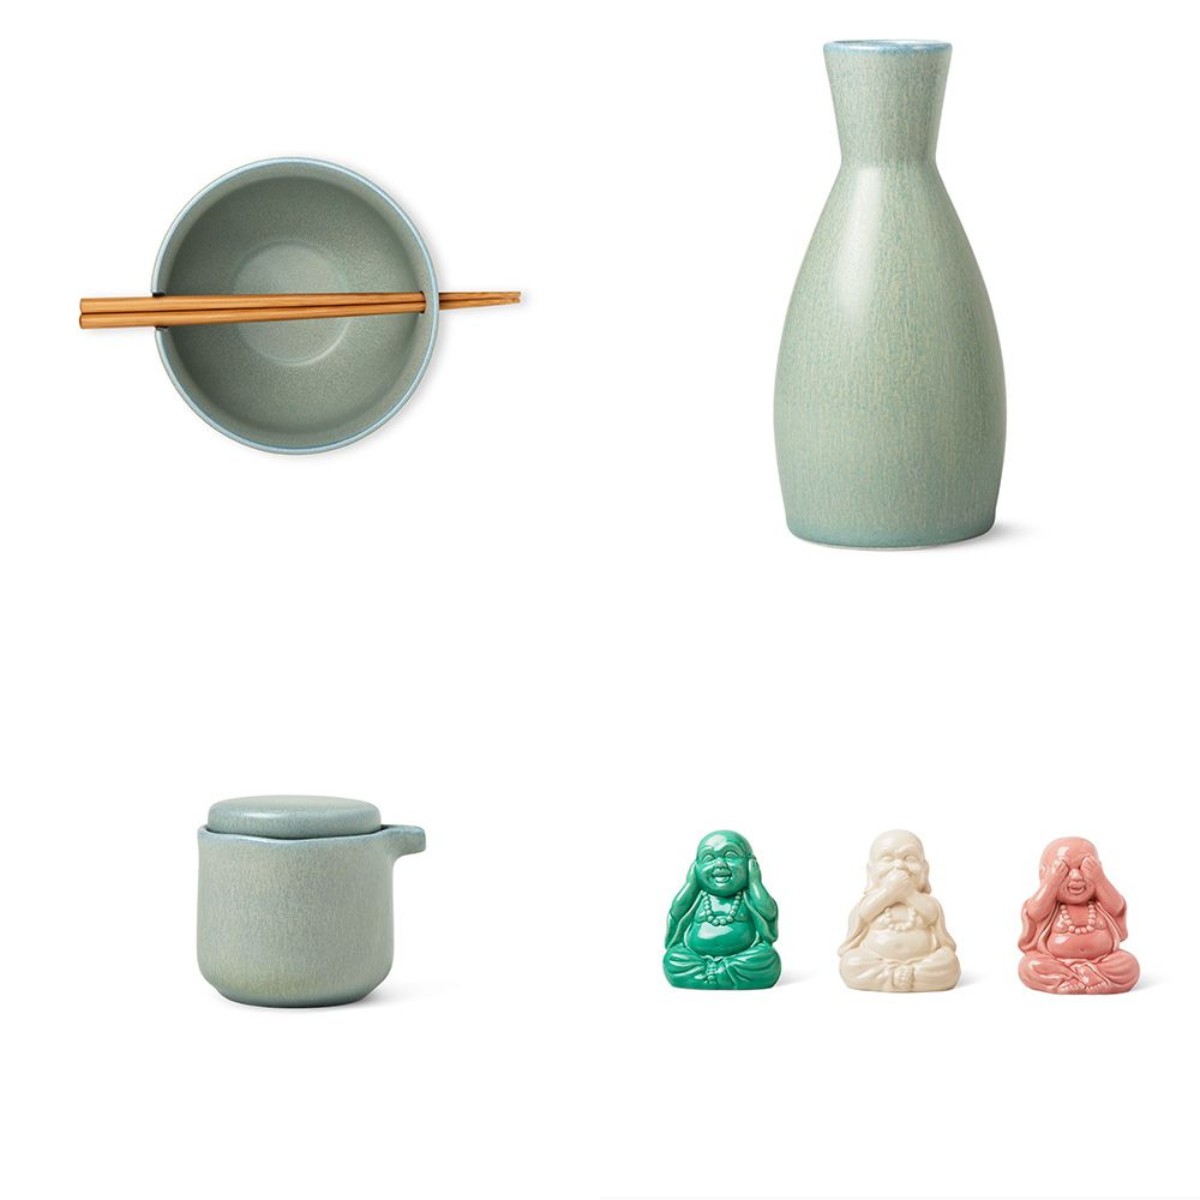 フライング タイガー コペンハーゲン 北欧デザイナーが考えた日本アイテムが斬新で素敵 箸をセットできるお茶碗など Pouch ポーチ